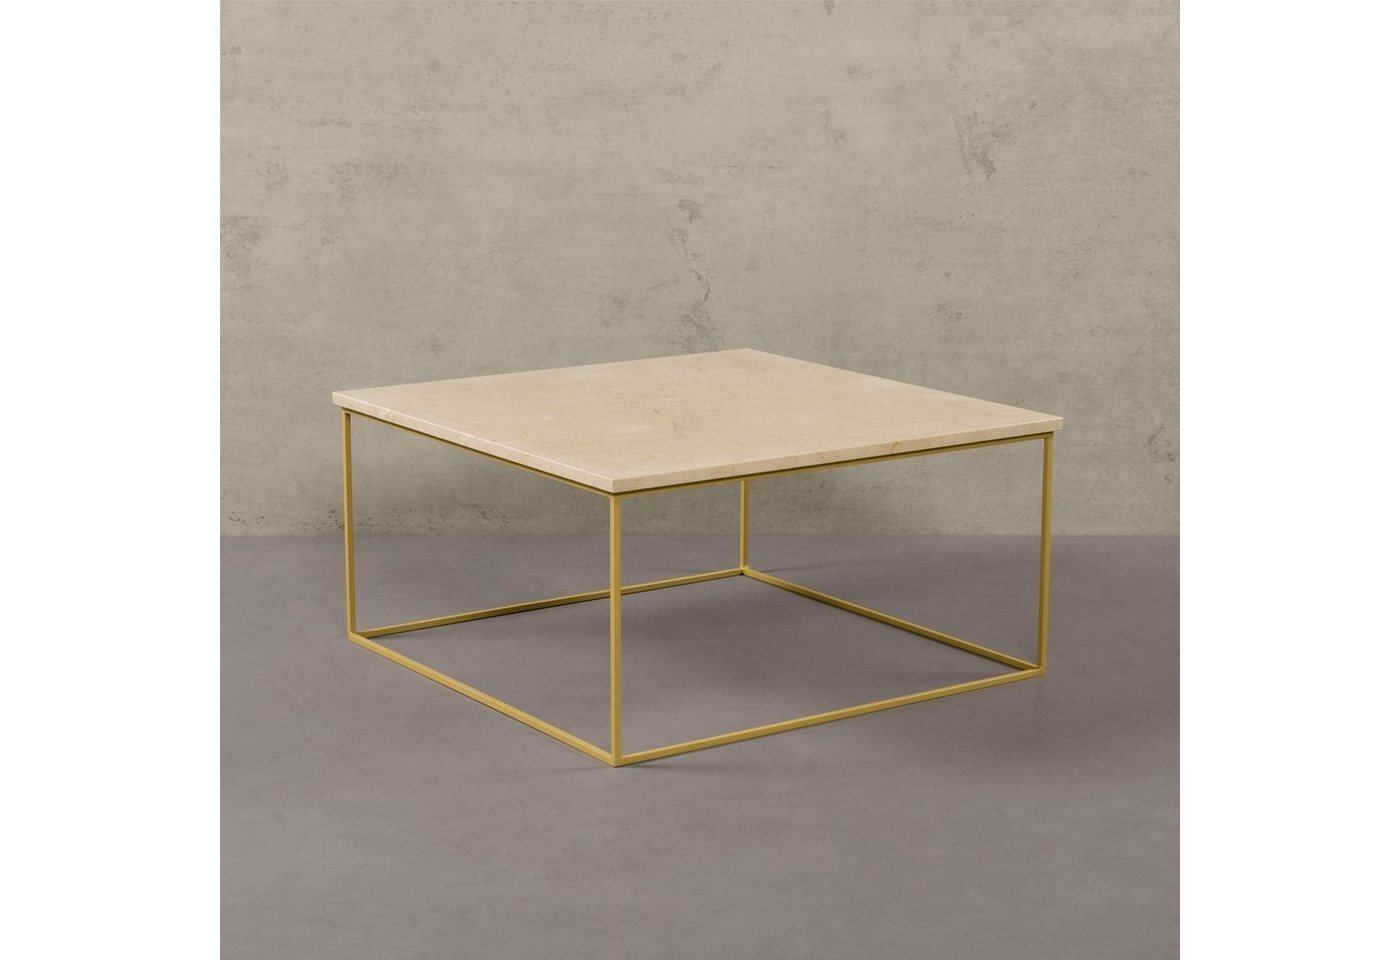 MAGNA Atelier Couchtisch AARHUS Coffee Table aus Marmor, Wohnzimmer Tisch eckig, Metallgestell, 80x80x40cm von MAGNA Atelier